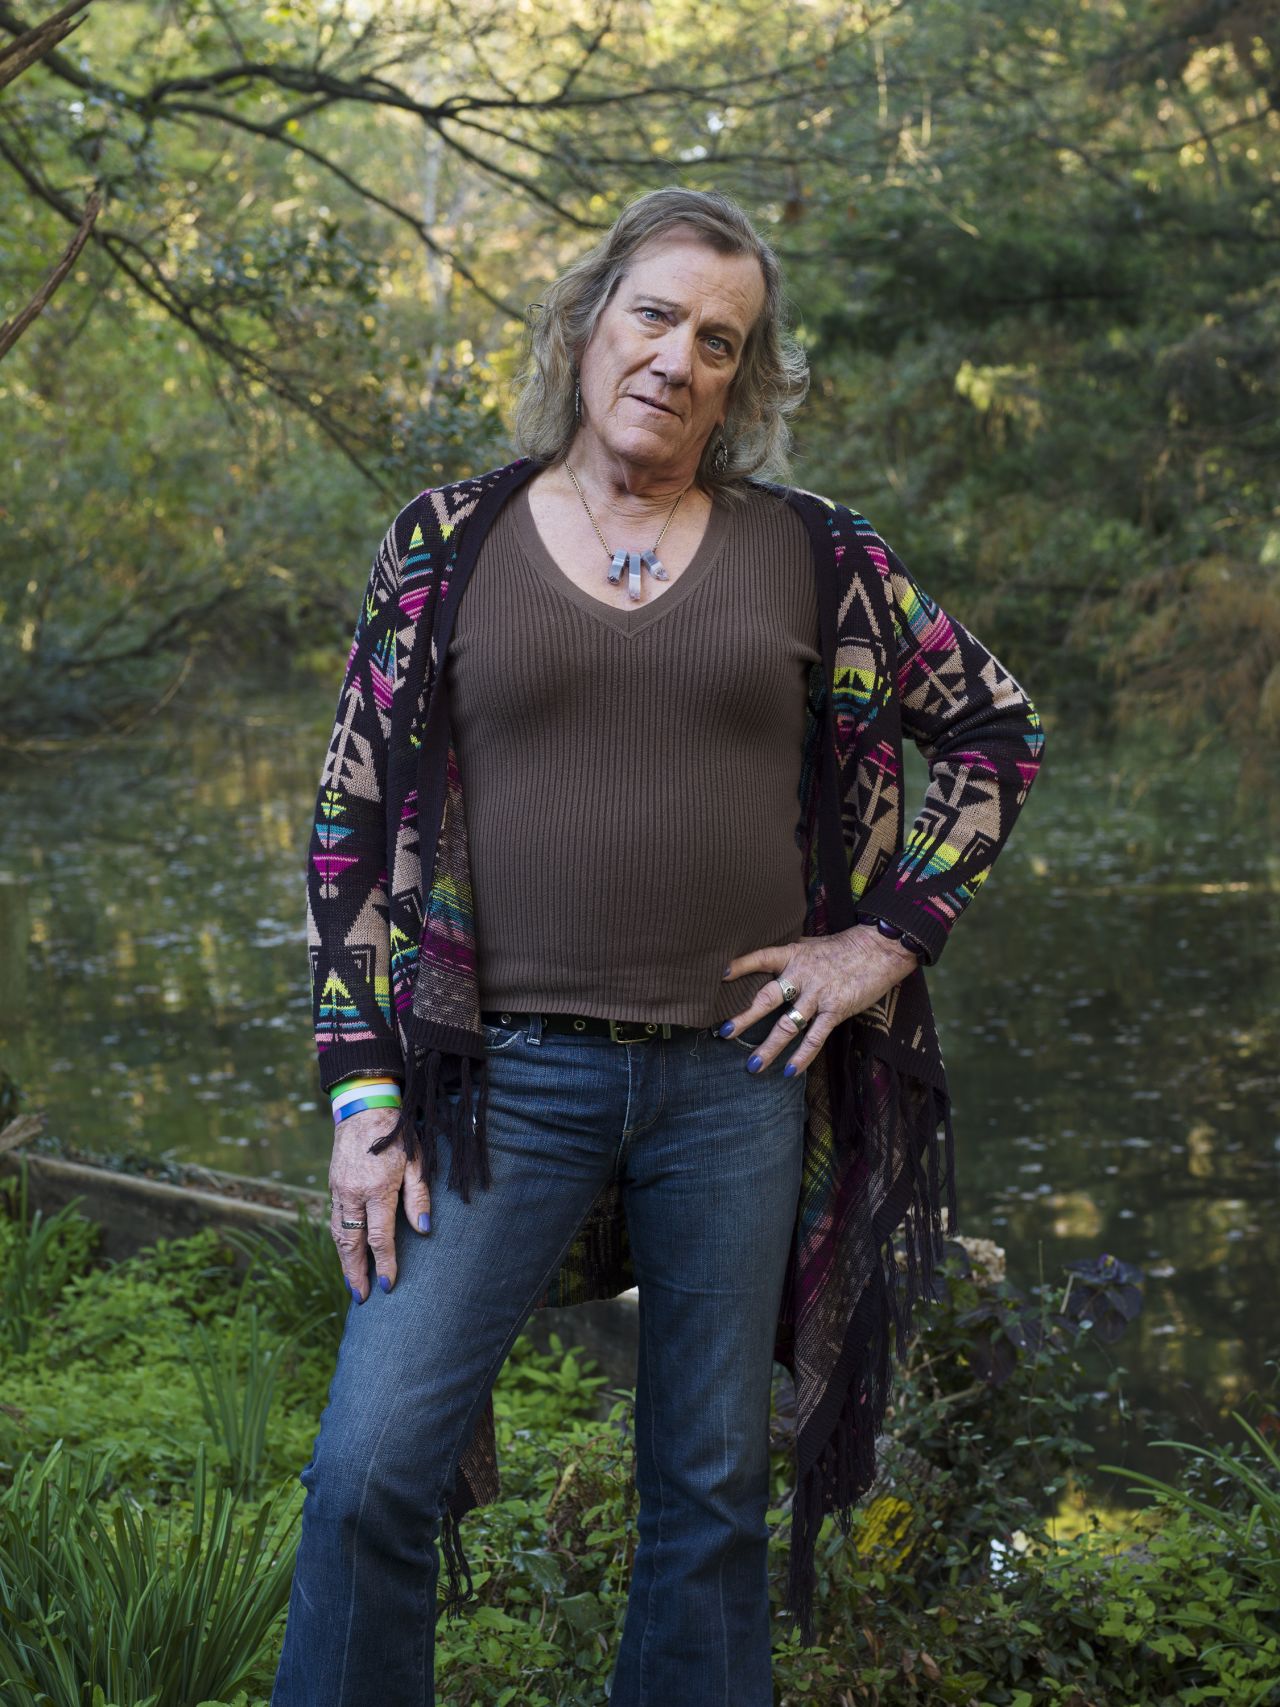 Portraits Depict Struggles And Joys Of Older Transgender Adults Cnn